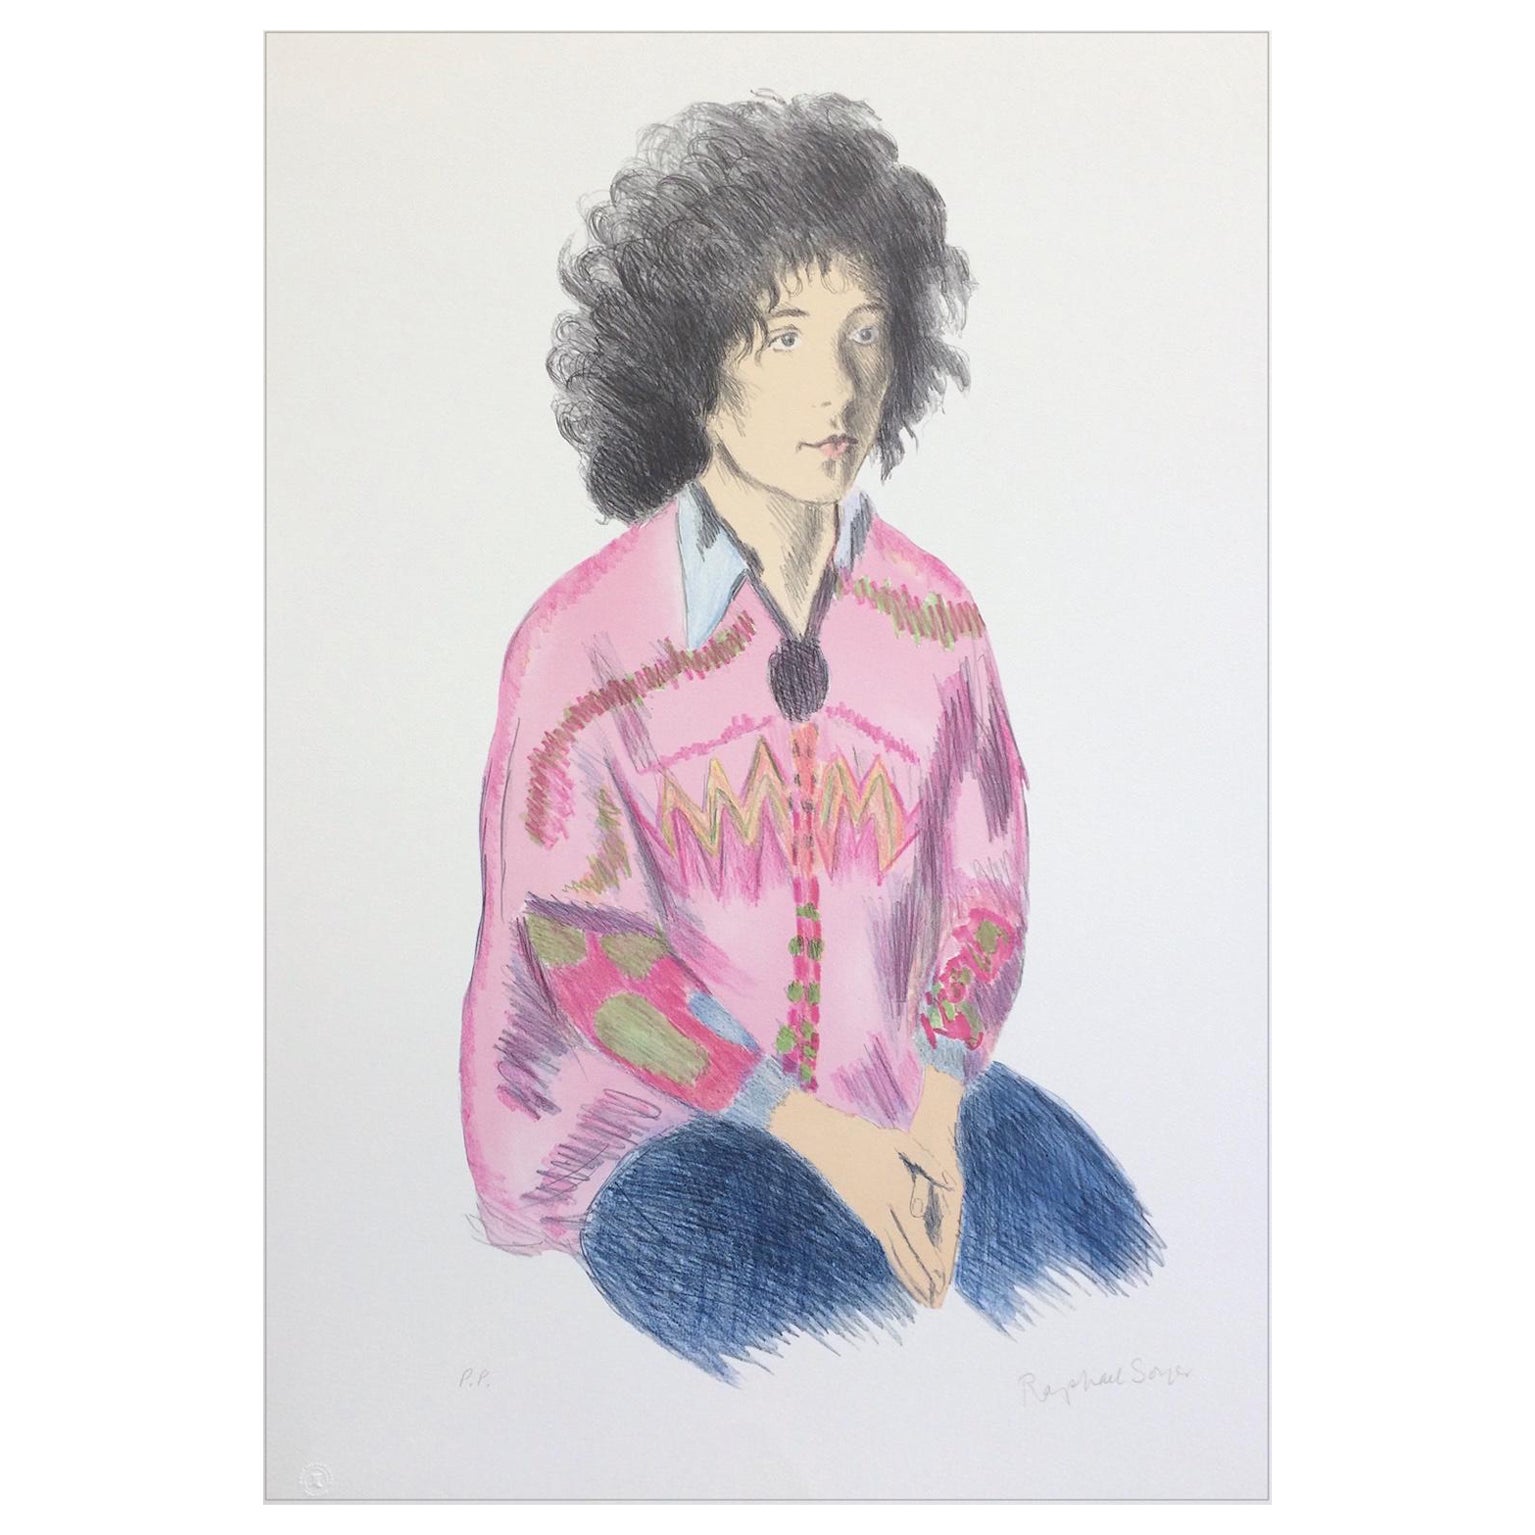 Porträt von Liz, signierte Lithographie, sitzende Frau mit flauschigem Haar, rosa Tunika, Jeans